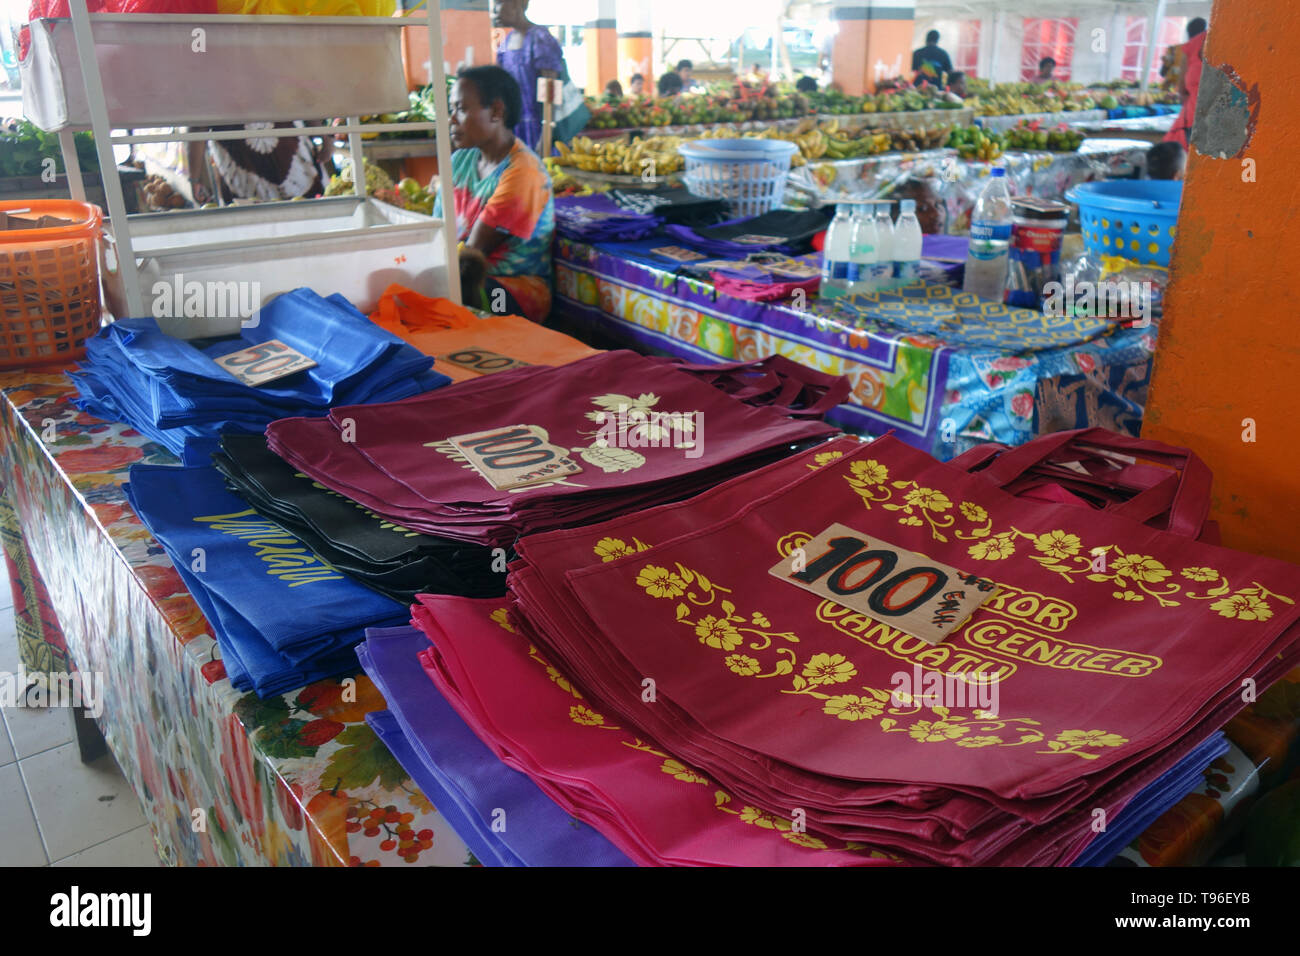 Des sacs réutilisables pour la vente au marché à la suite de l'interdiction des sacs en plastique, Port Vila, Vanuatu Efate,. Pas de monsieur ou PR Banque D'Images